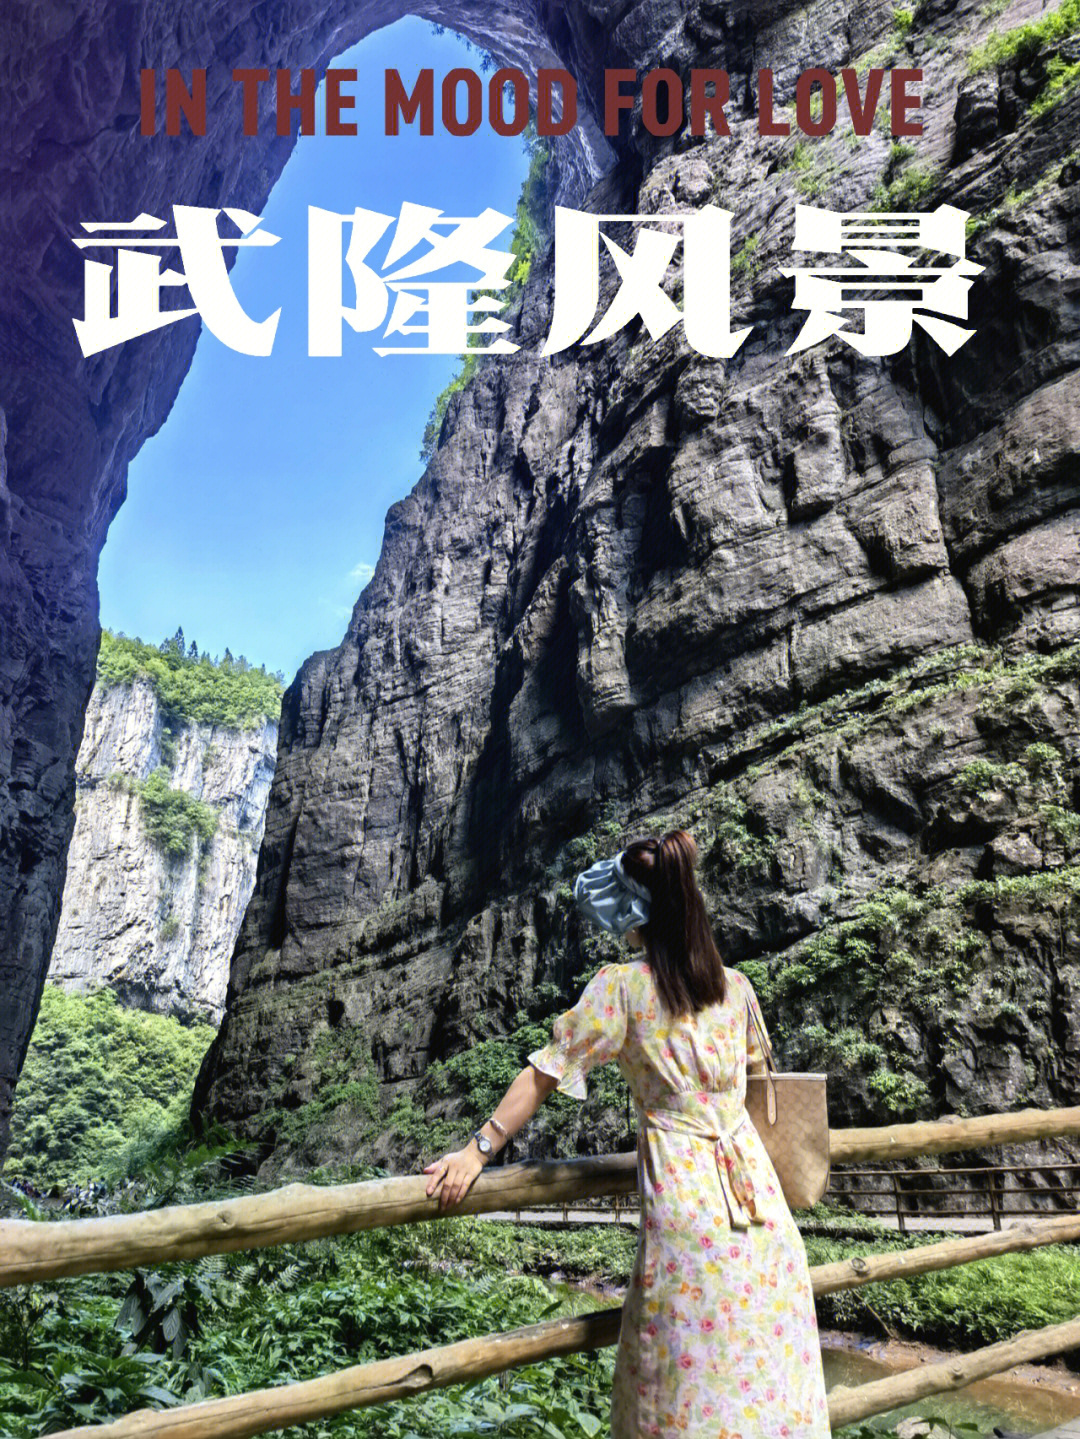 天生三桥景区旅游攻略图片